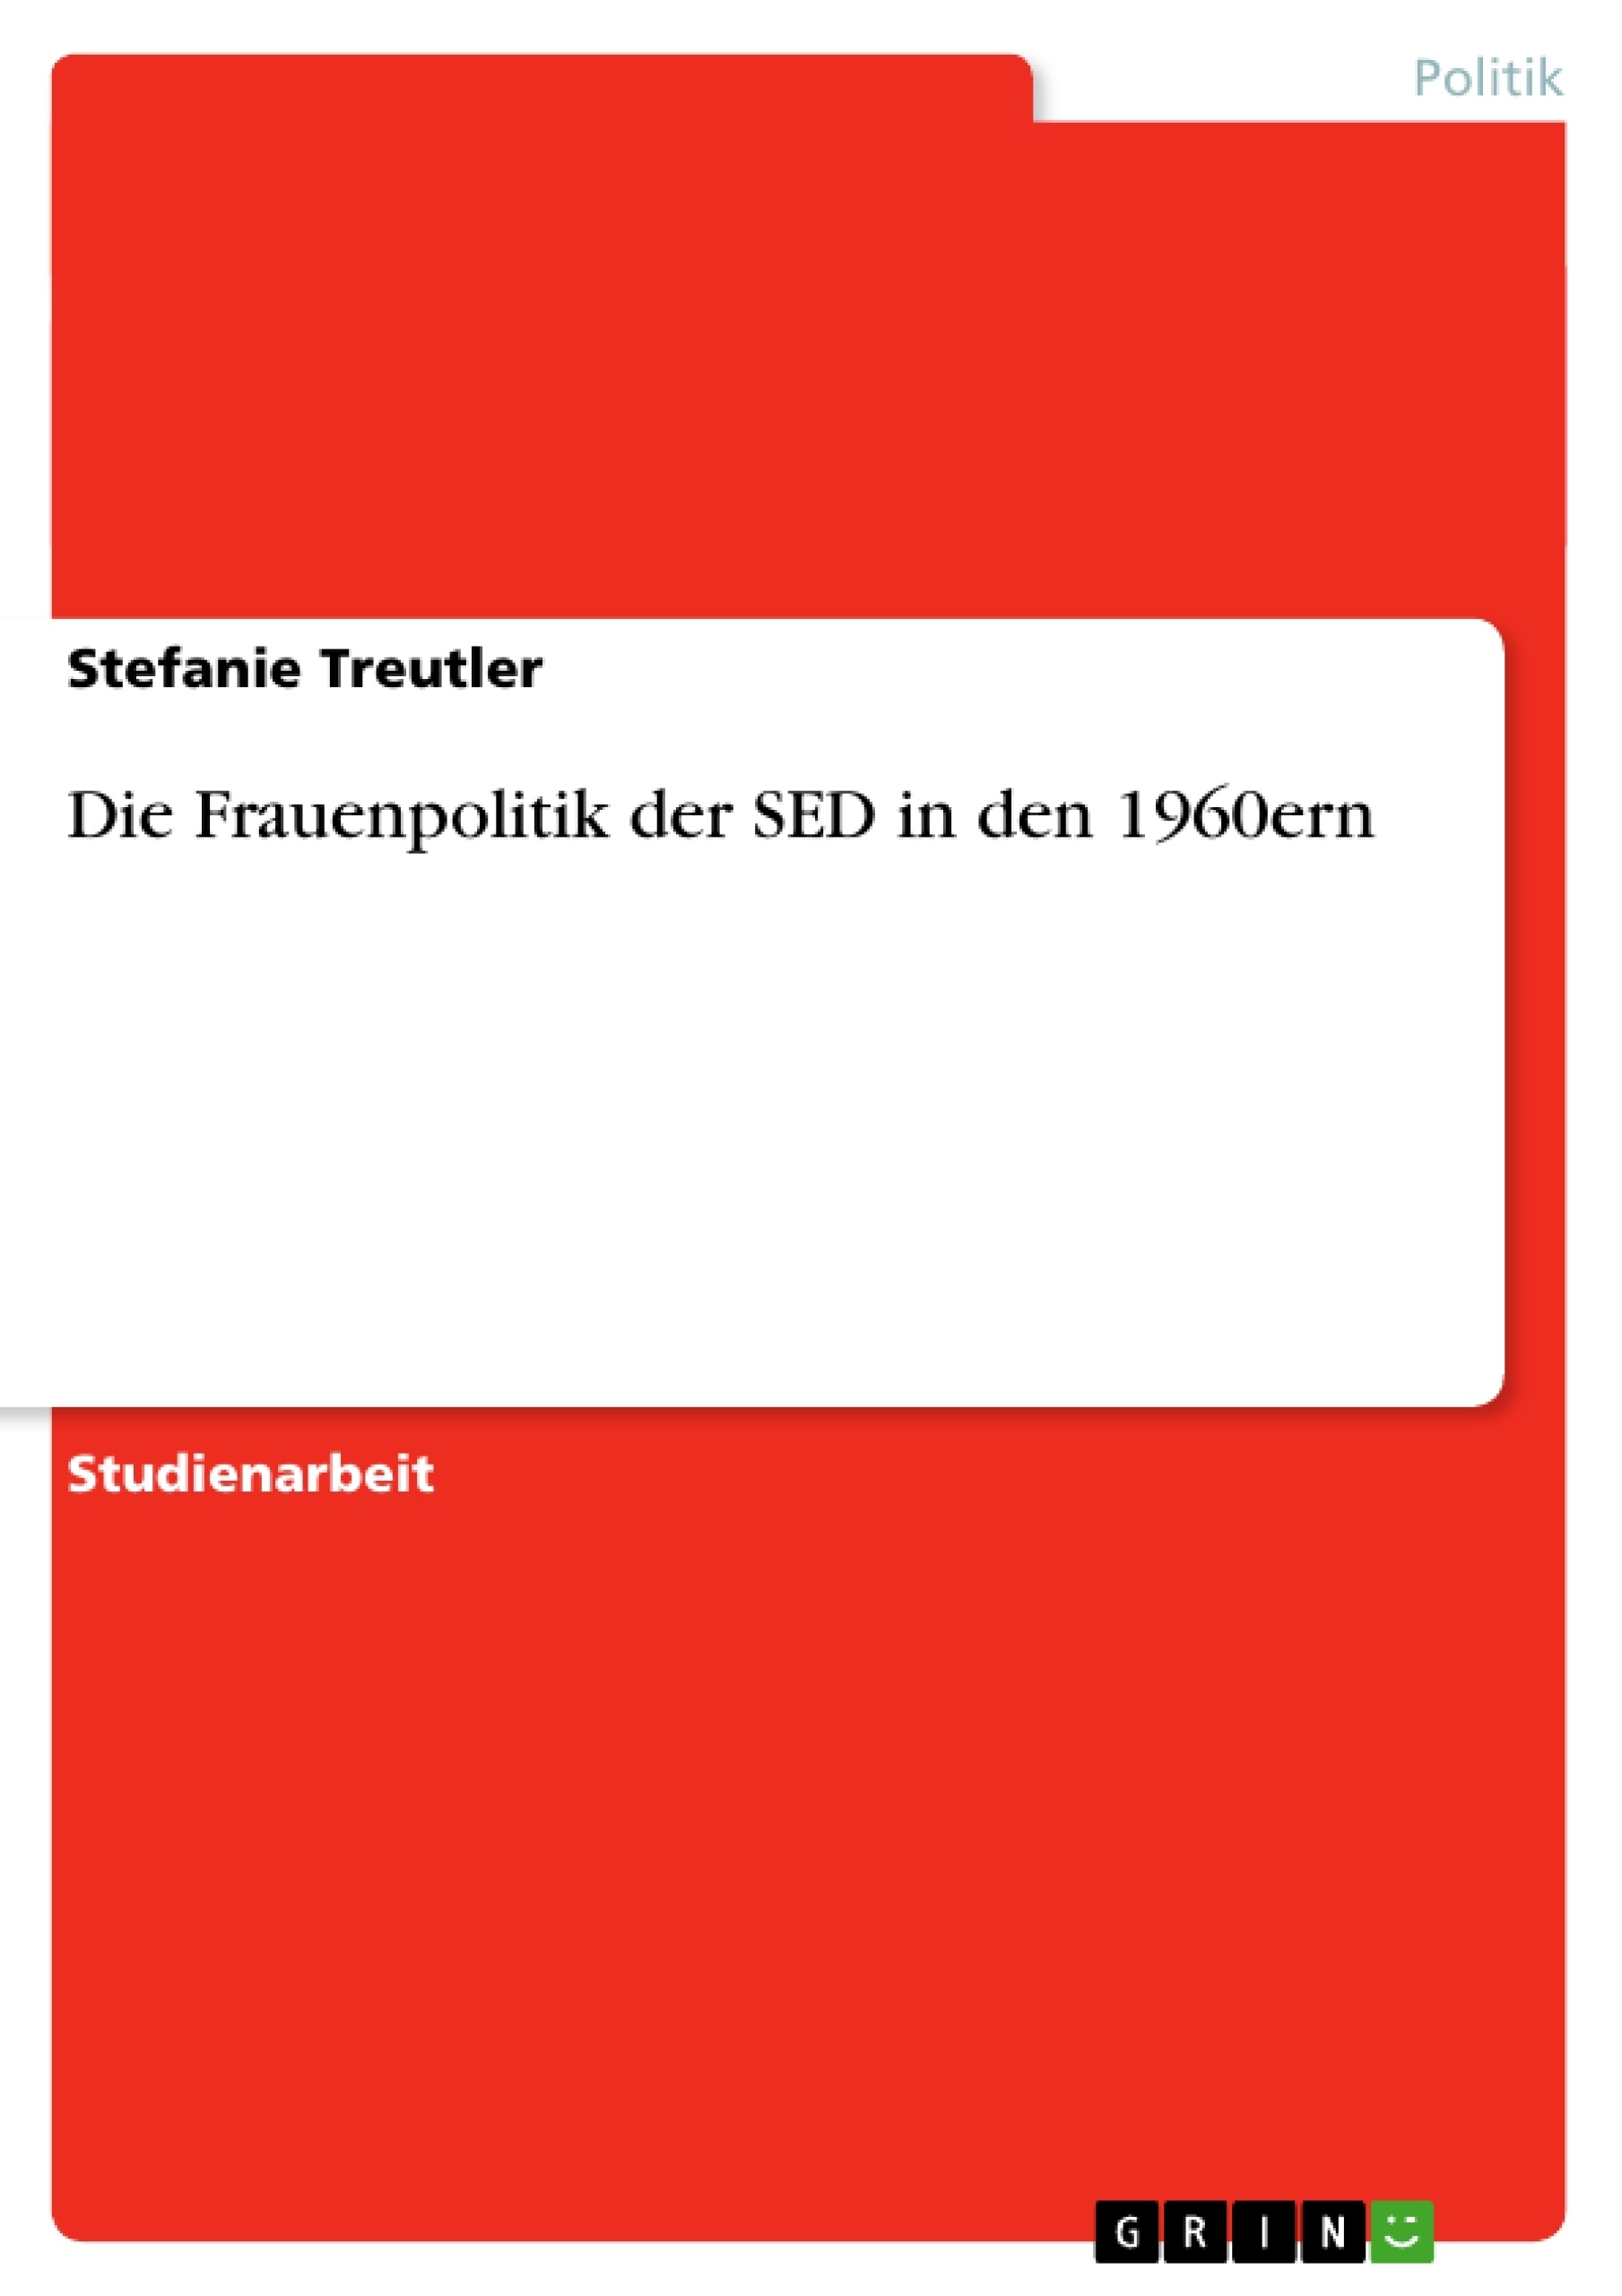 Title: Die Frauenpolitik der SED in den 1960ern